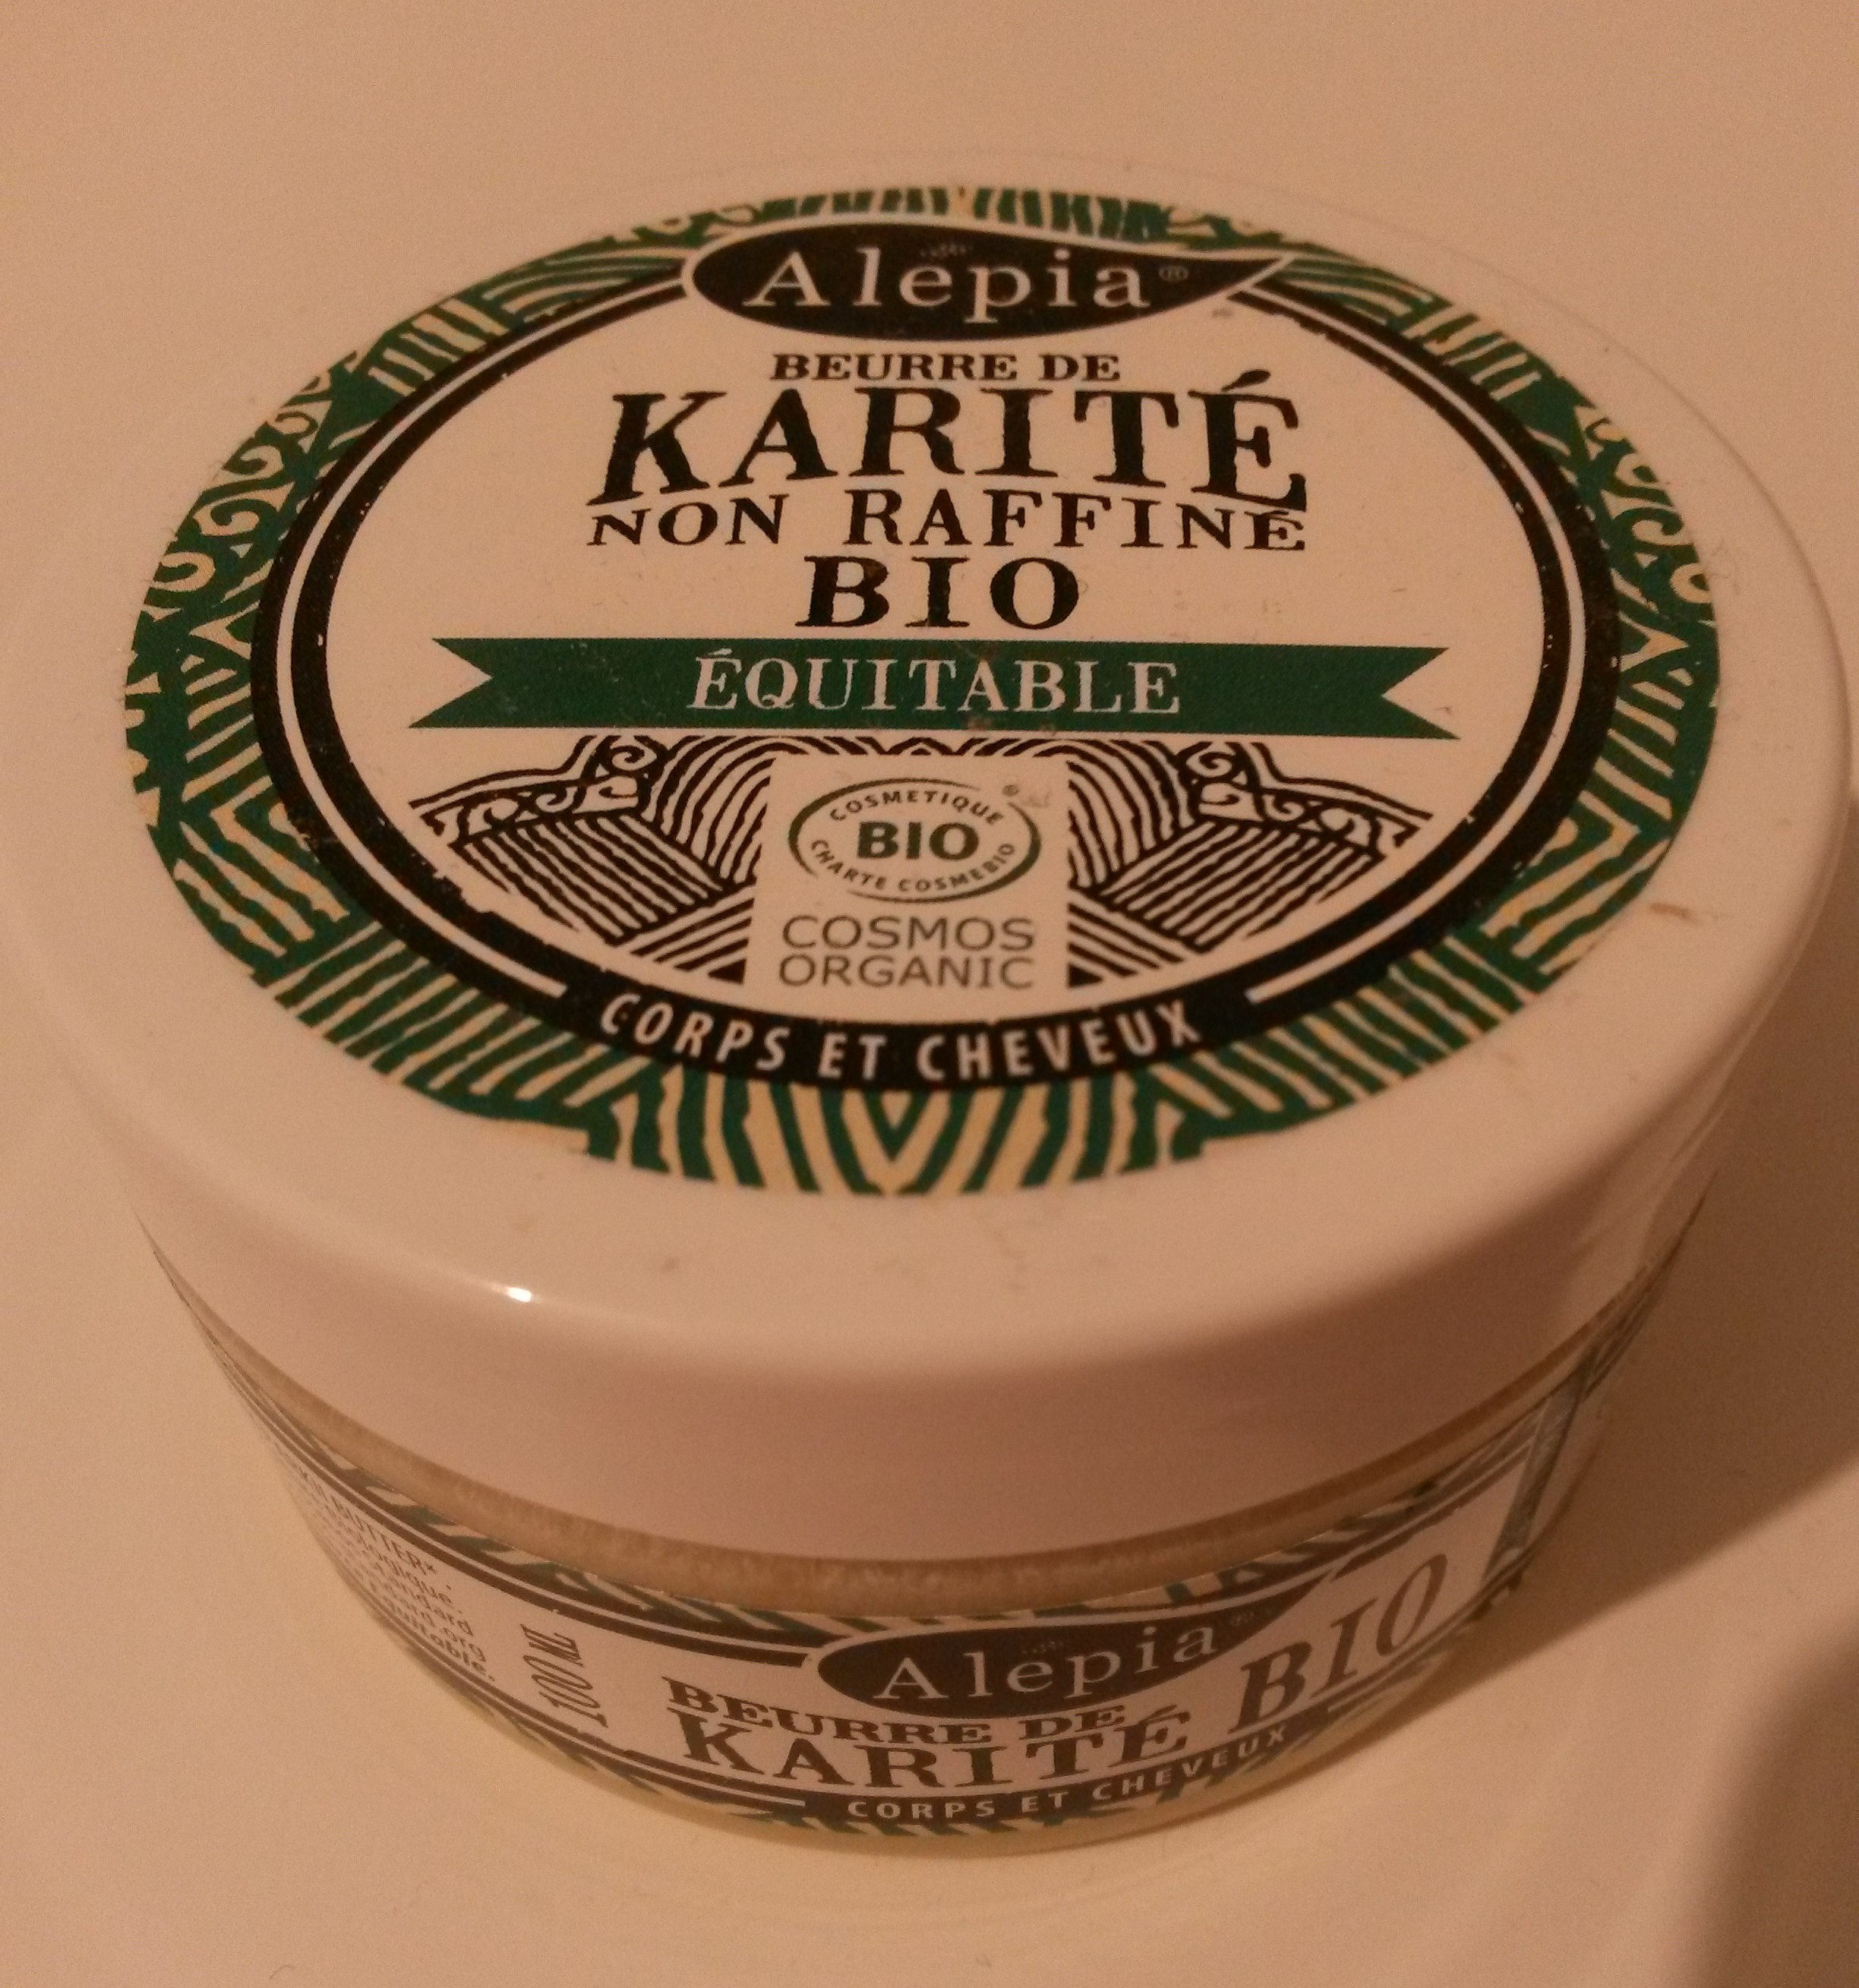 Beurre de karité - non raffiné, bio, équitable - Product - fr